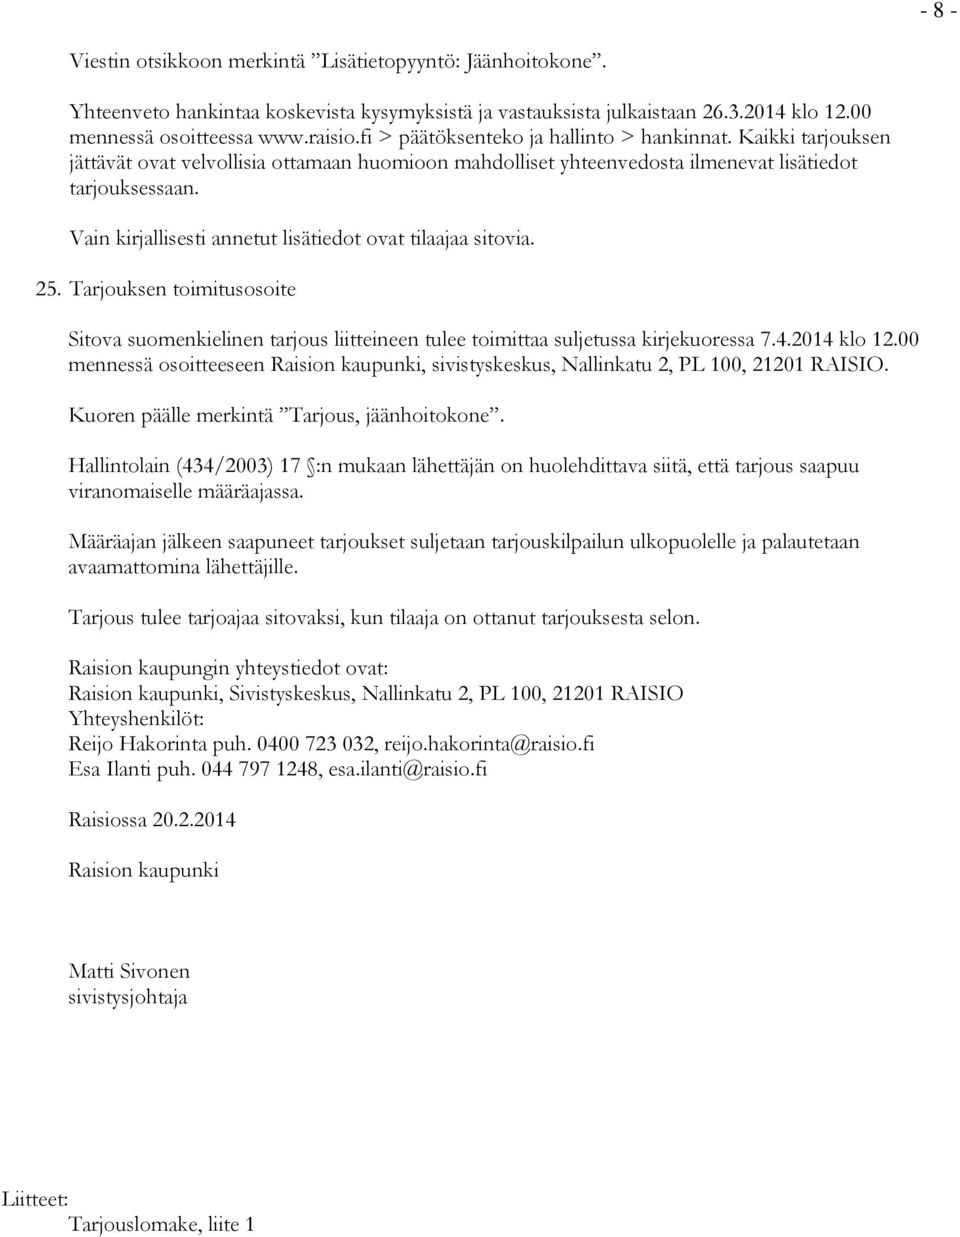 Vain kirjallisesti annetut lisätiedot ovat tilaajaa sitovia. 25. Tarjouksen toimitusosoite Sitova suomenkielinen tarjous liitteineen tulee toimittaa suljetussa kirjekuoressa 7.4.2014 klo 12.